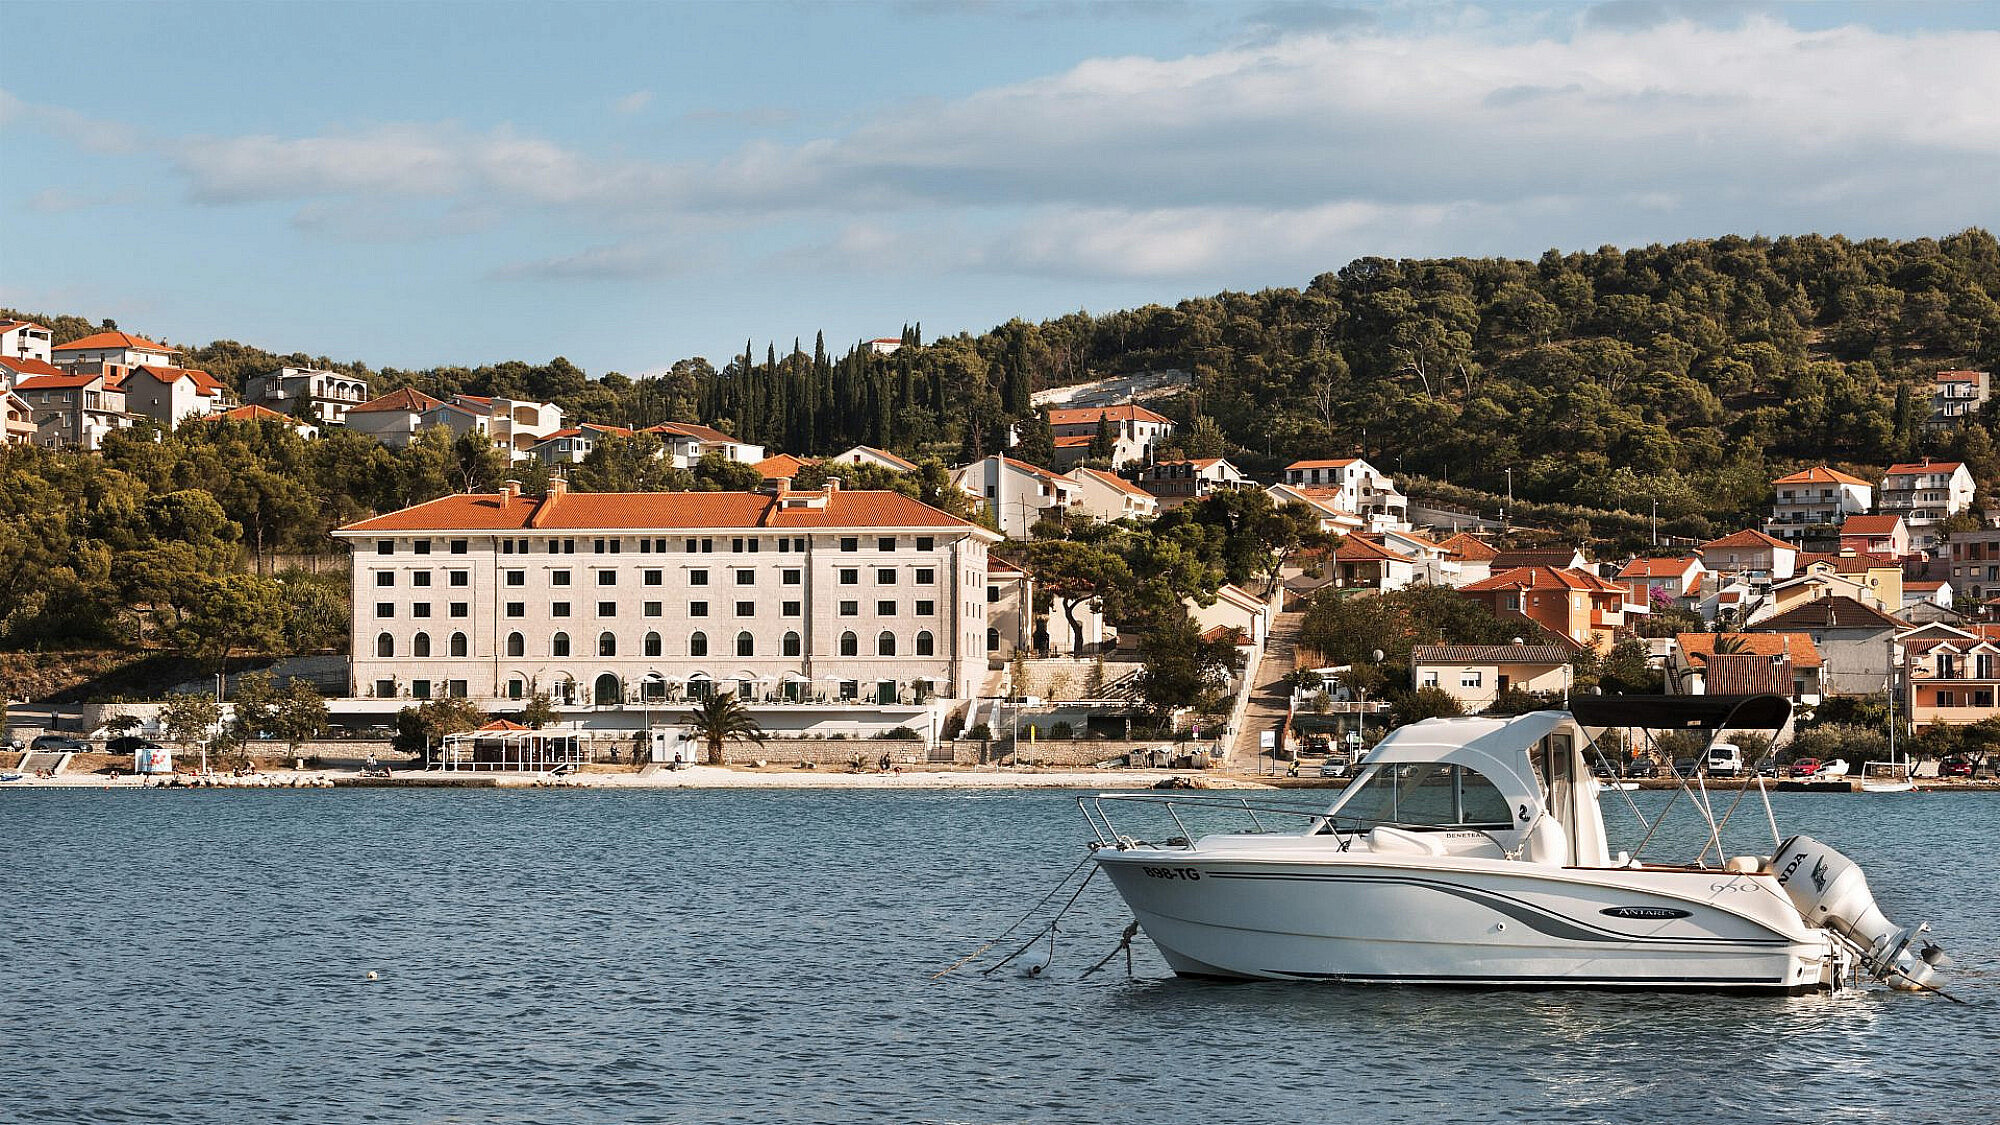 מלון בראון ביץ' האוס קרואטיה | צילום: אסף פינצ'וק